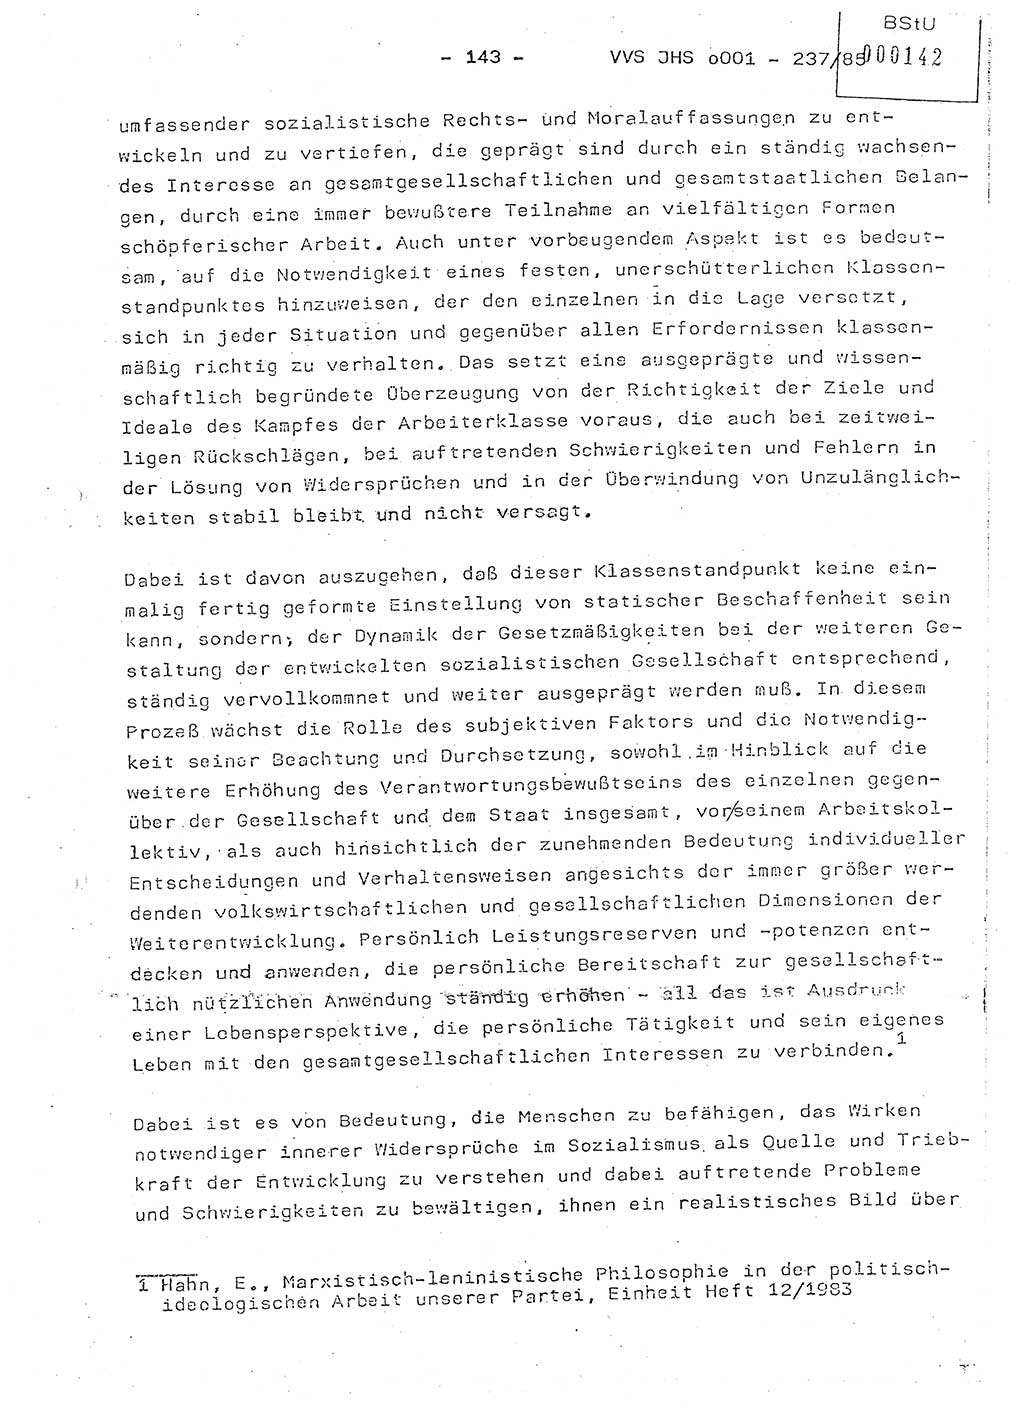 Dissertation Oberstleutnant Peter Jakulski (JHS), Oberstleutnat Christian Rudolph (HA Ⅸ), Major Horst Böttger (ZMD), Major Wolfgang Grüneberg (JHS), Major Albert Meutsch (JHS), Ministerium für Staatssicherheit (MfS) [Deutsche Demokratische Republik (DDR)], Juristische Hochschule (JHS), Vertrauliche Verschlußsache (VVS) o001-237/85, Potsdam 1985, Seite 143 (Diss. MfS DDR JHS VVS o001-237/85 1985, S. 143)